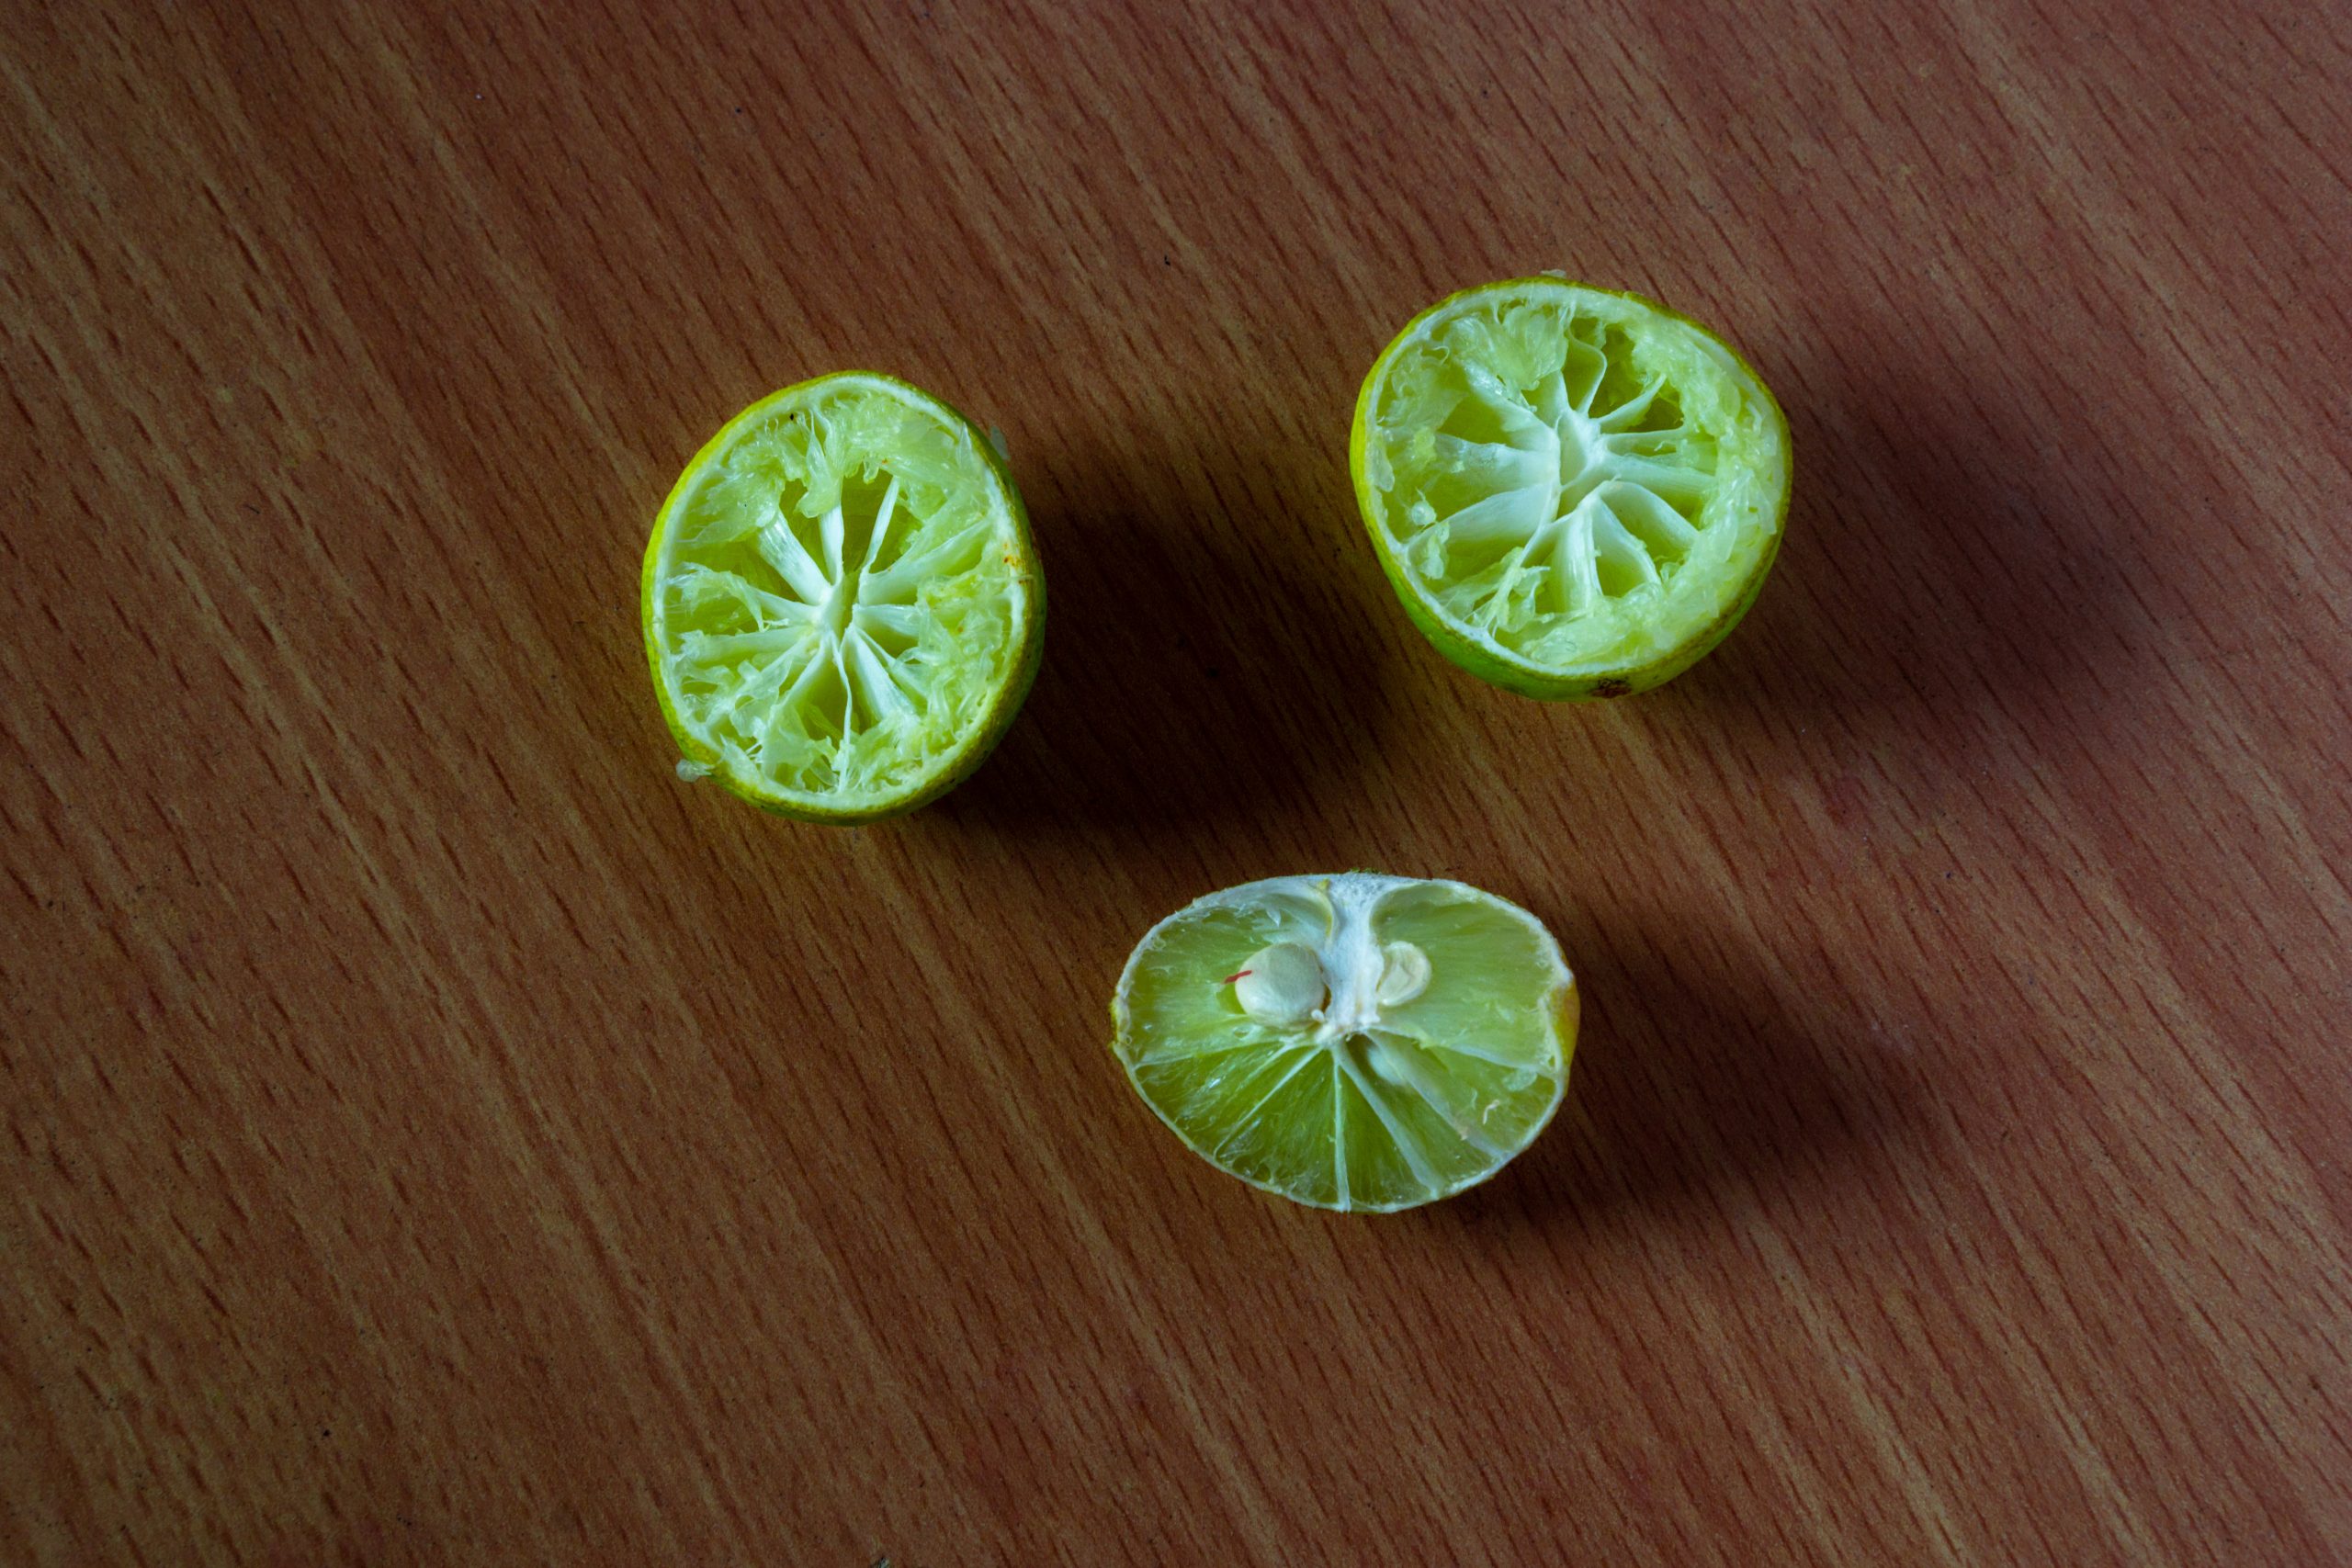 Squeezed lemon pieces